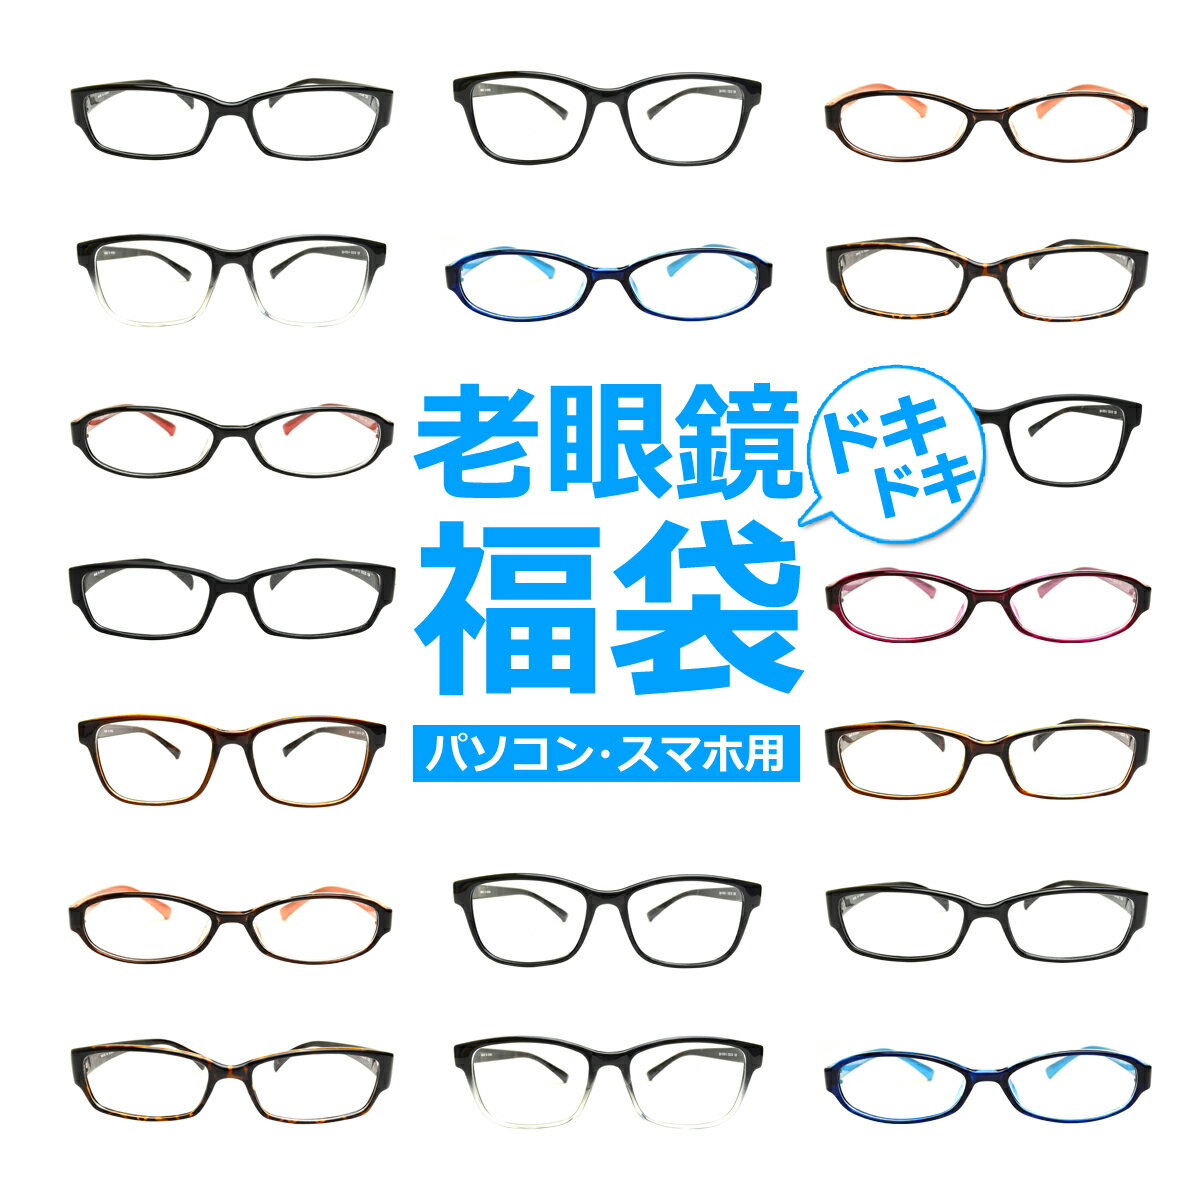 リーディンググラス パソコン・スマホ用老眼鏡福袋 ブルーライトカット率約33% メガネ 遠視 リーディンググラス